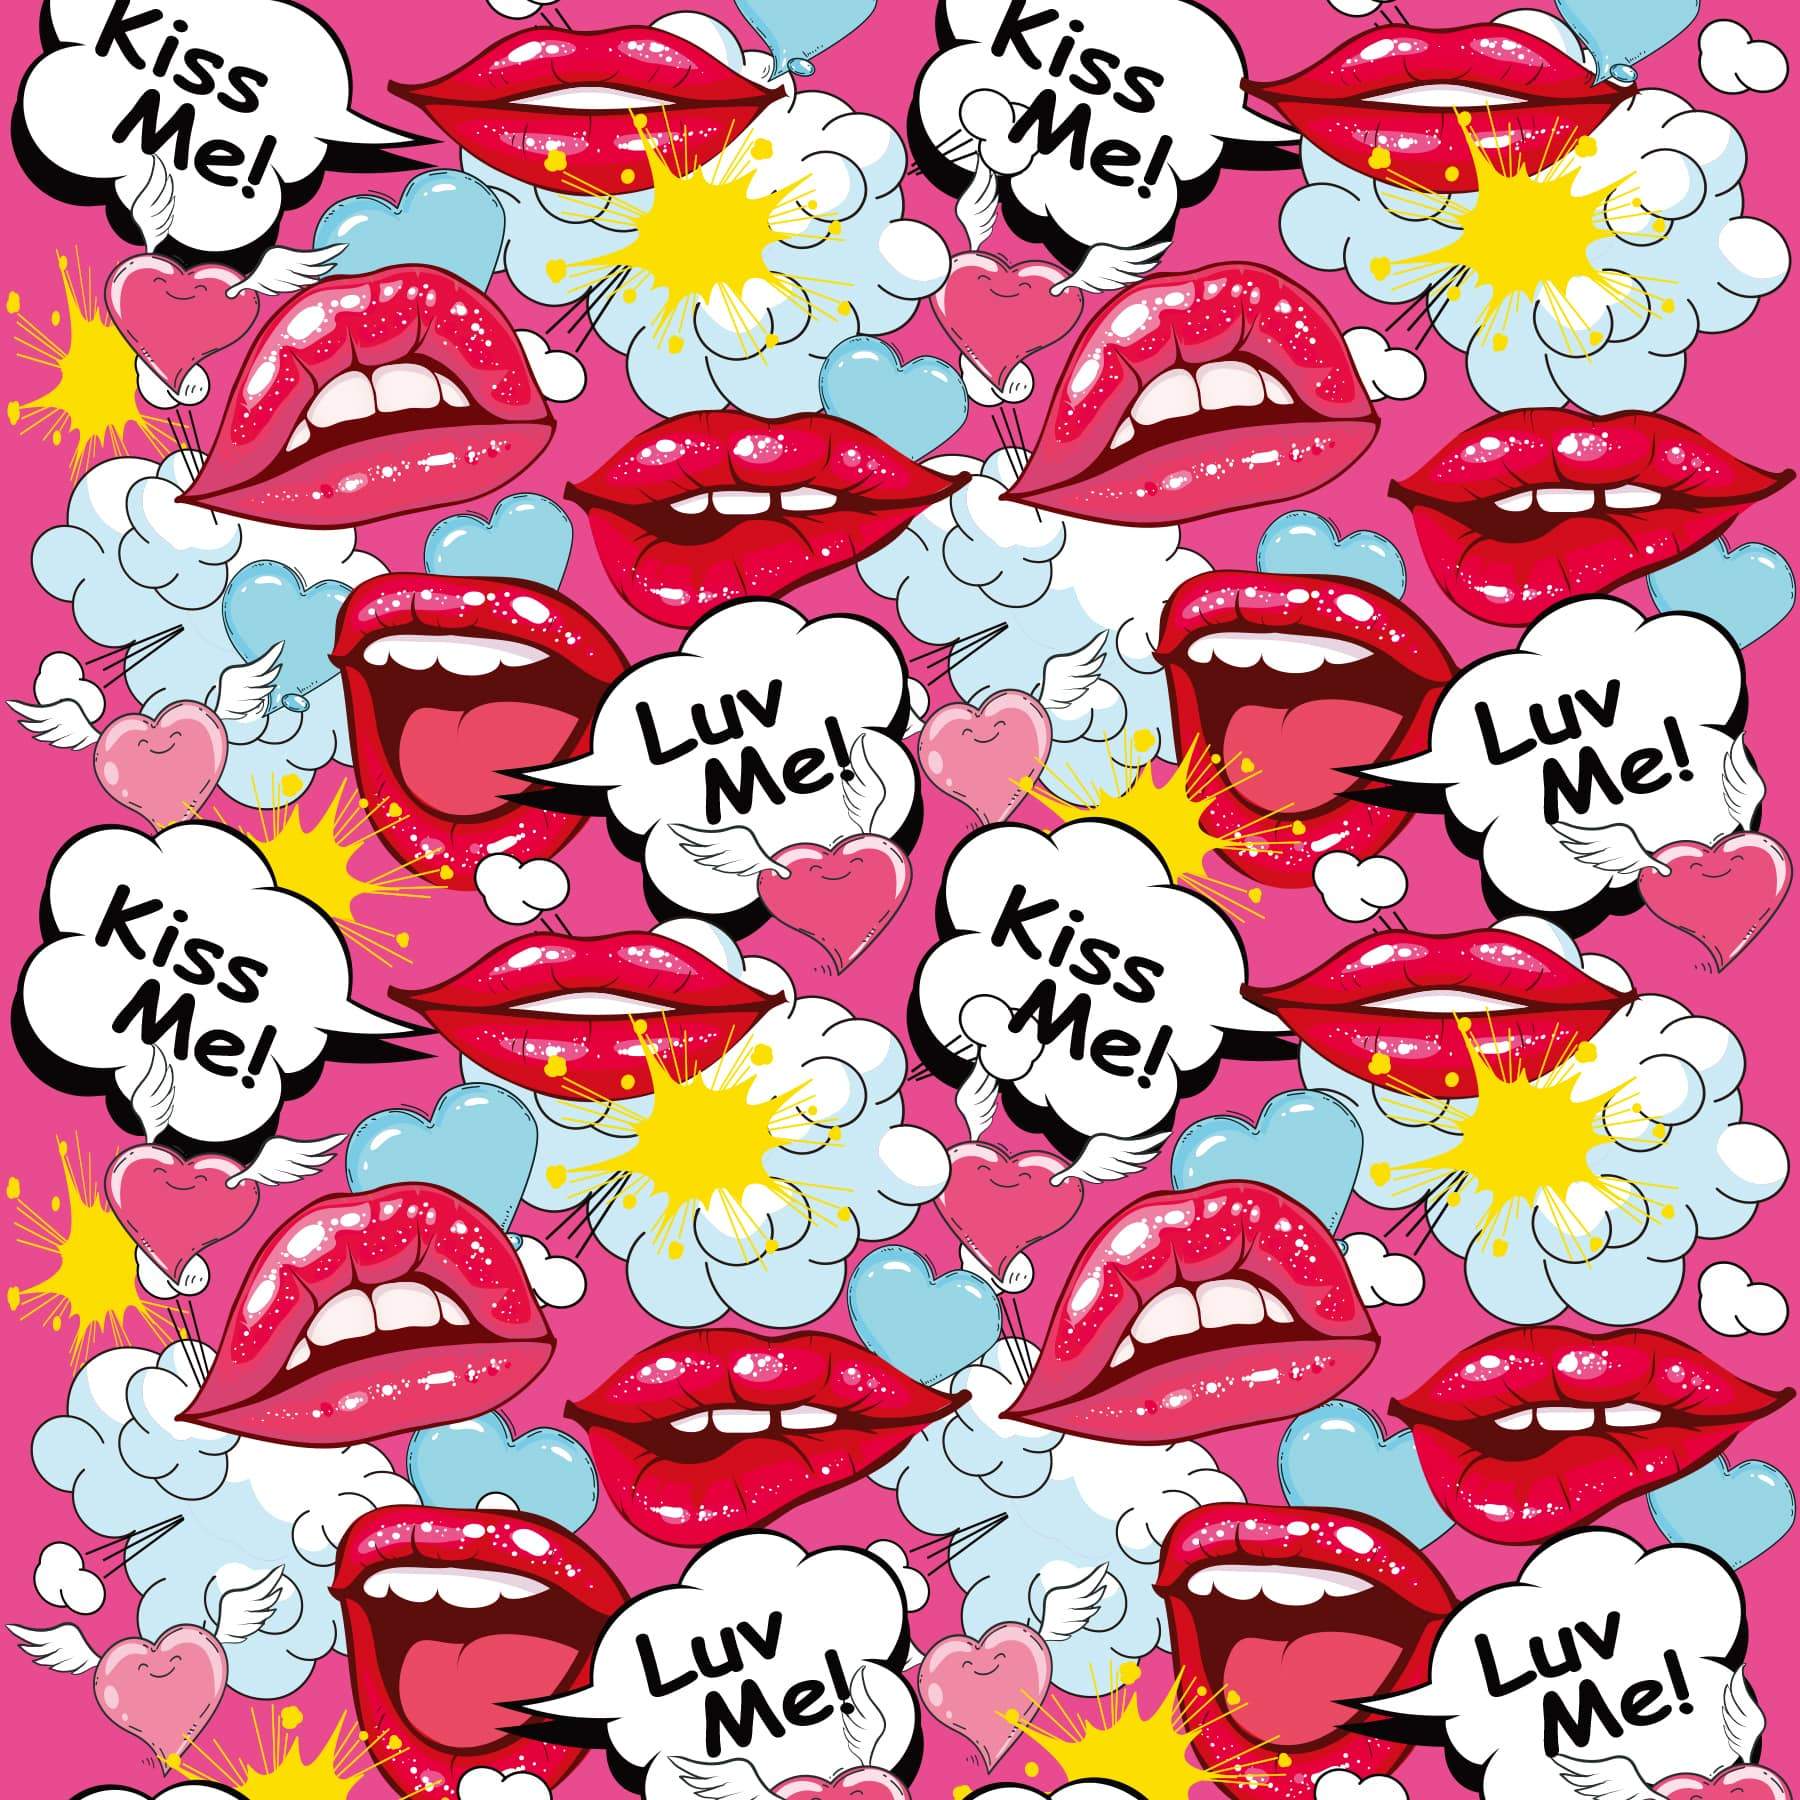 Prints Charming Pop Tease 5" Mini Vibrator, Kiss Me, Pink w/storage bag - The Happy Ending Shop